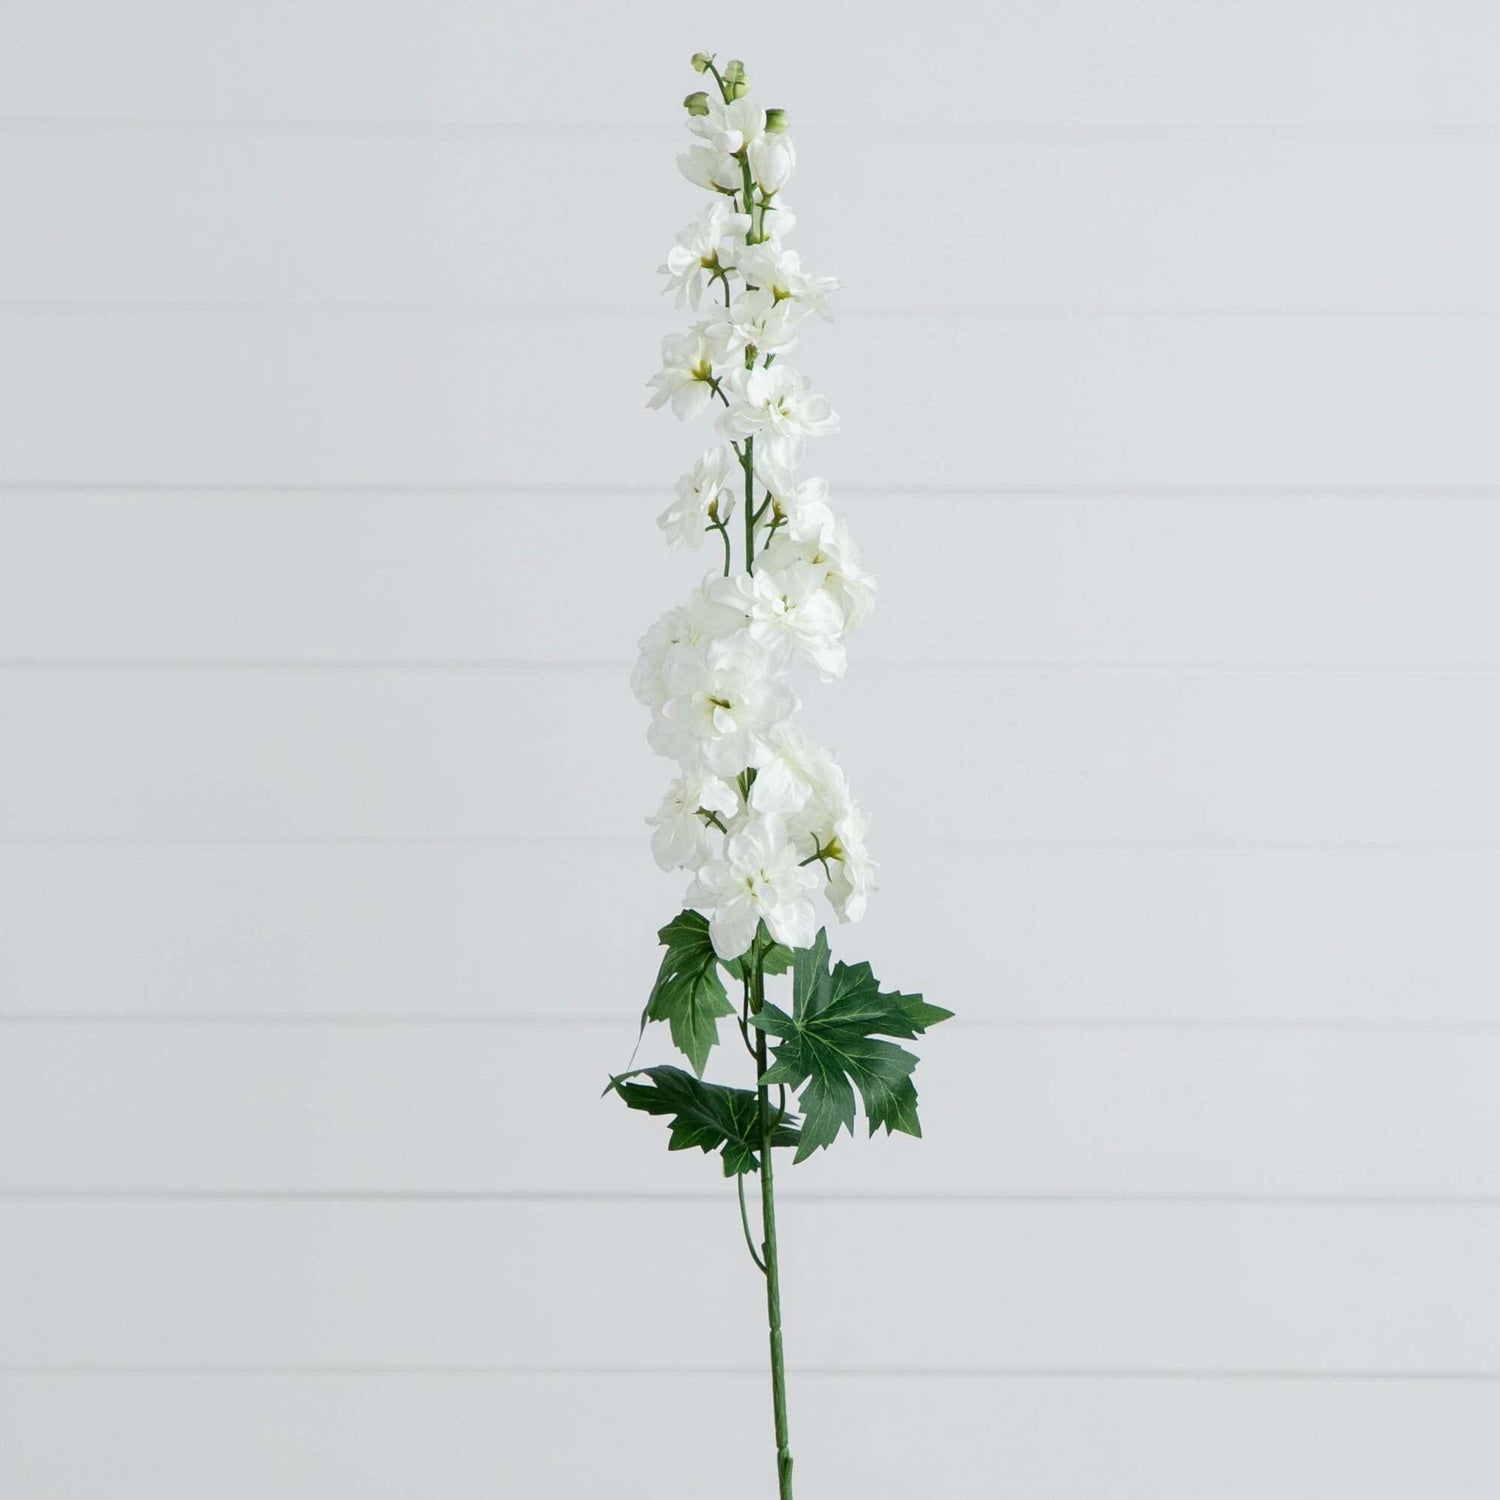 39" Artificial Delphinium Flower Stems- Set of 3